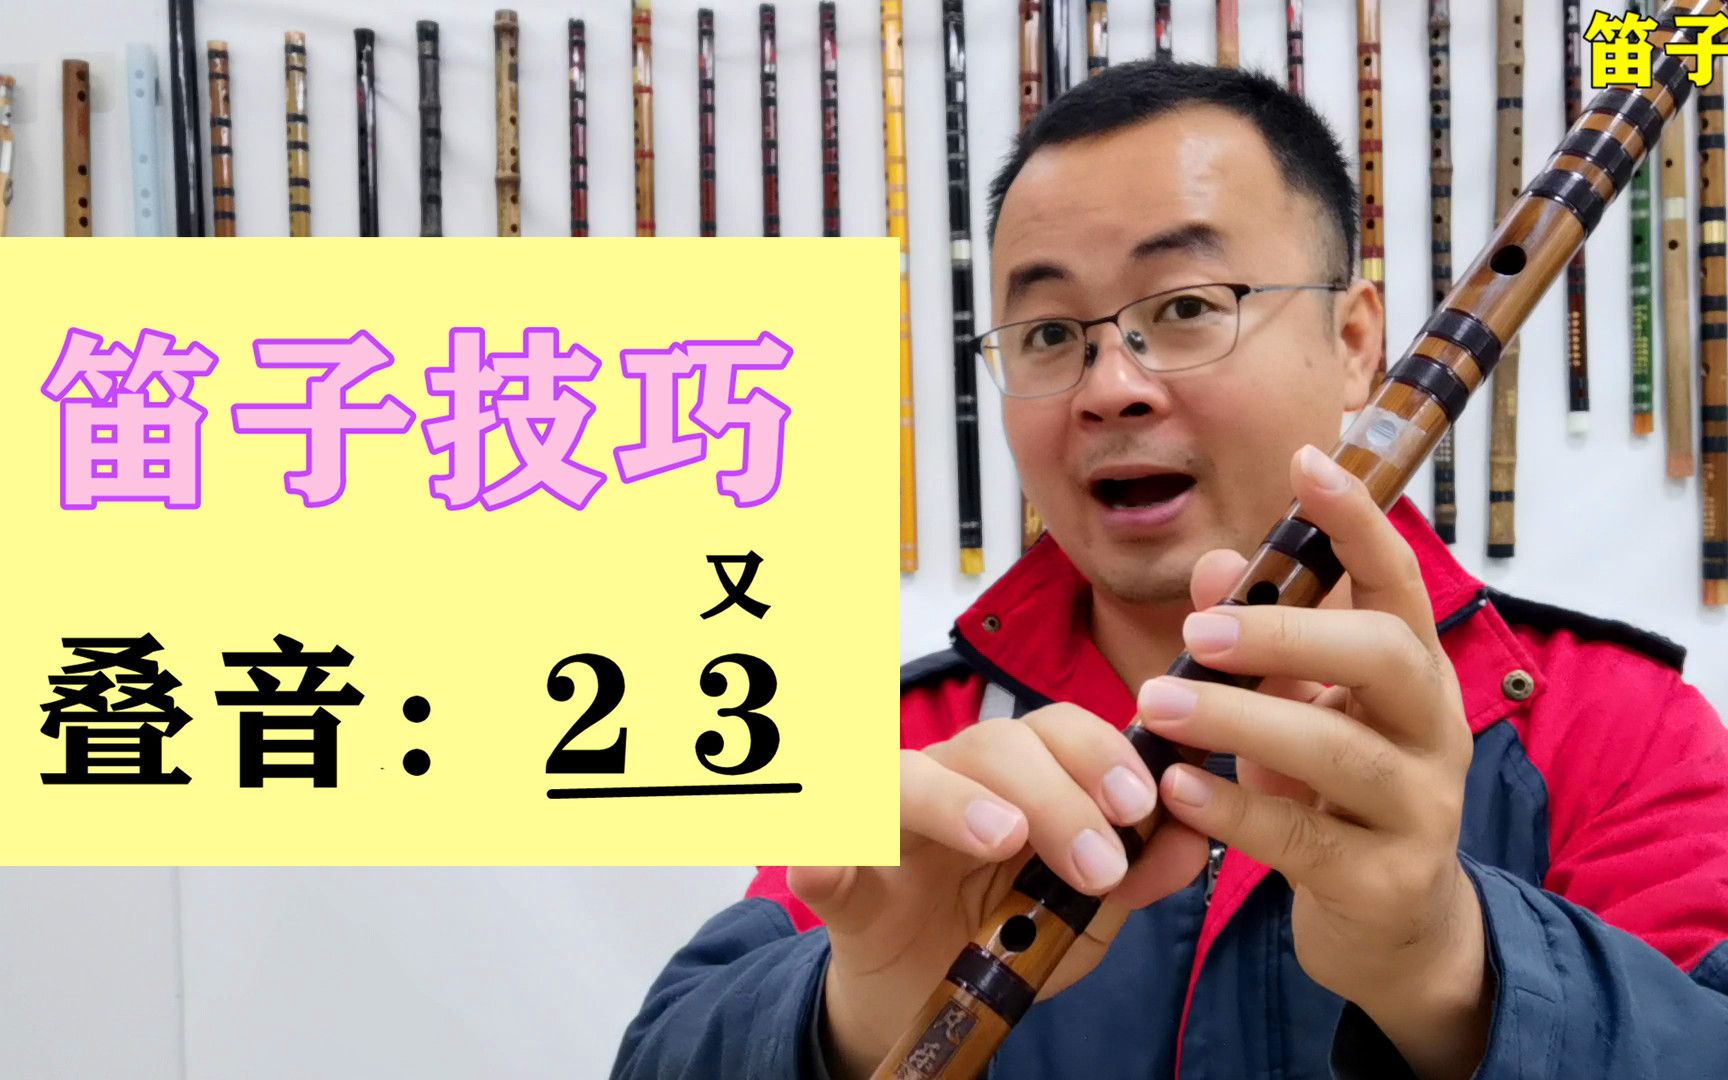 笛子吹不响怎么办，教你一个快速吹响笛子的方法-其他视频-搜狐视频